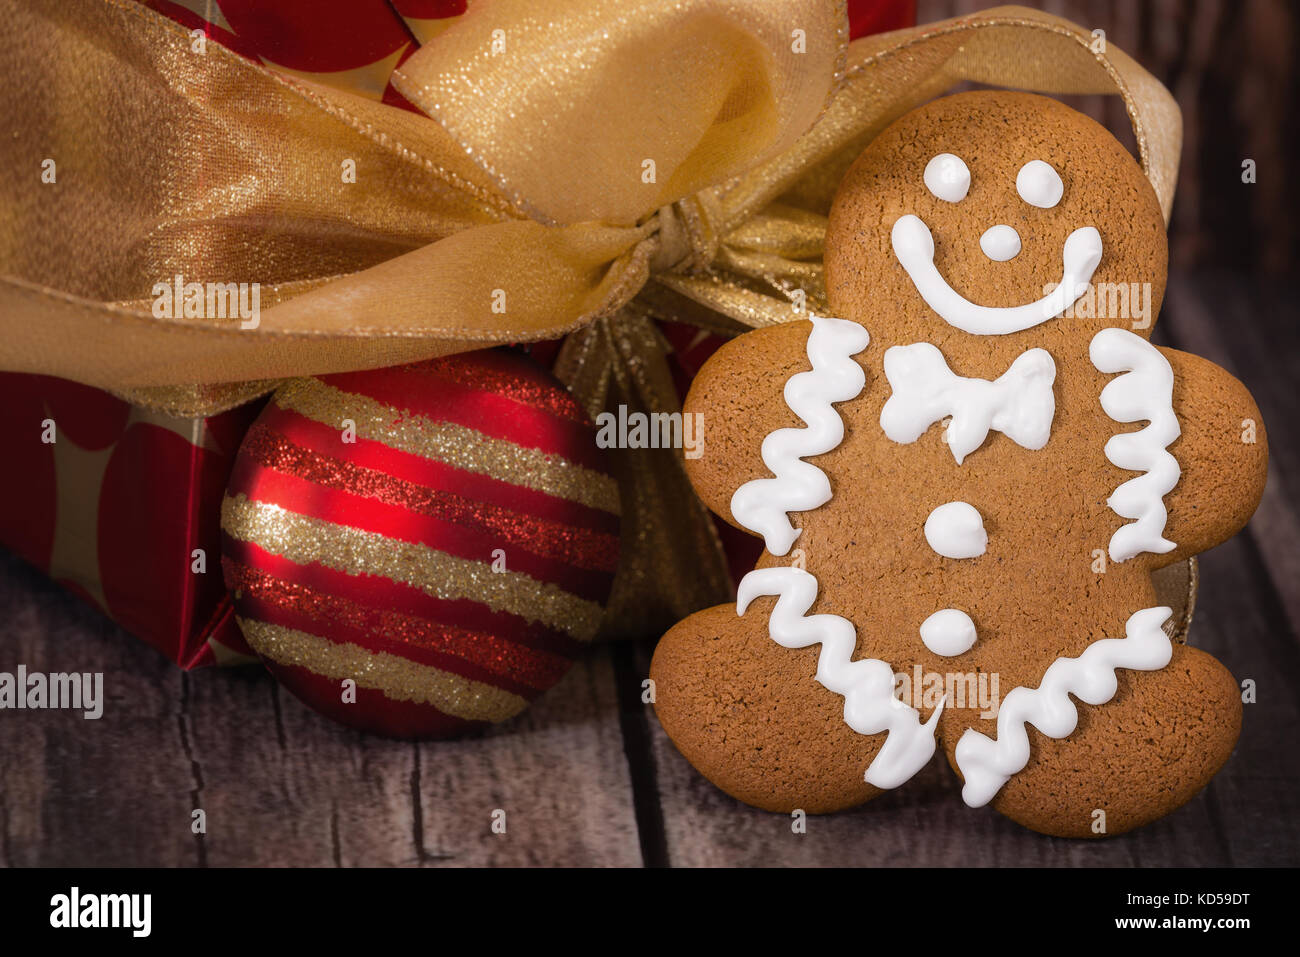 Gingerbread men cookie contre cadeau de noël et d'un ornement d'or et rouge Banque D'Images